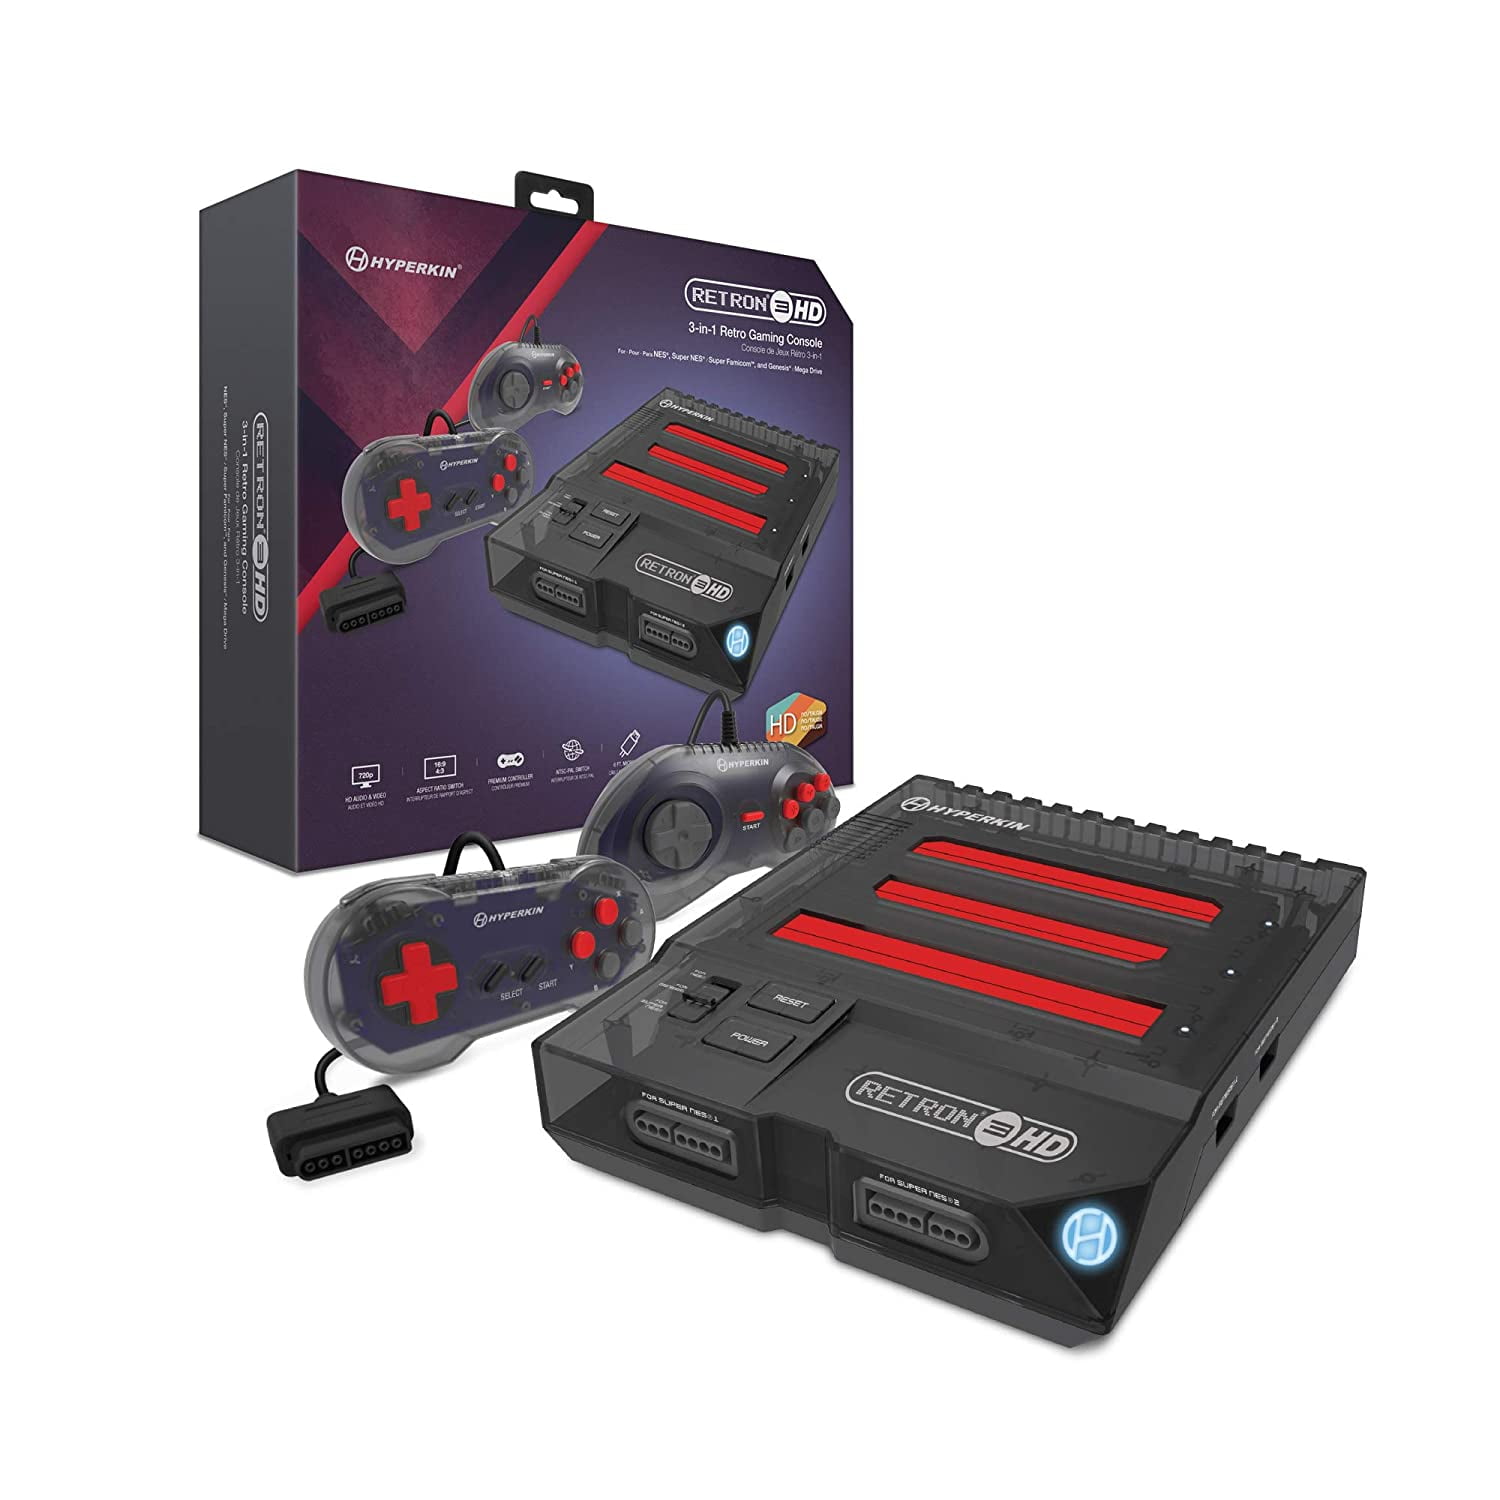 Emuladores Atari Nes Snes Megadrive Ps1 Ps2 Neogeo Arcade Atari